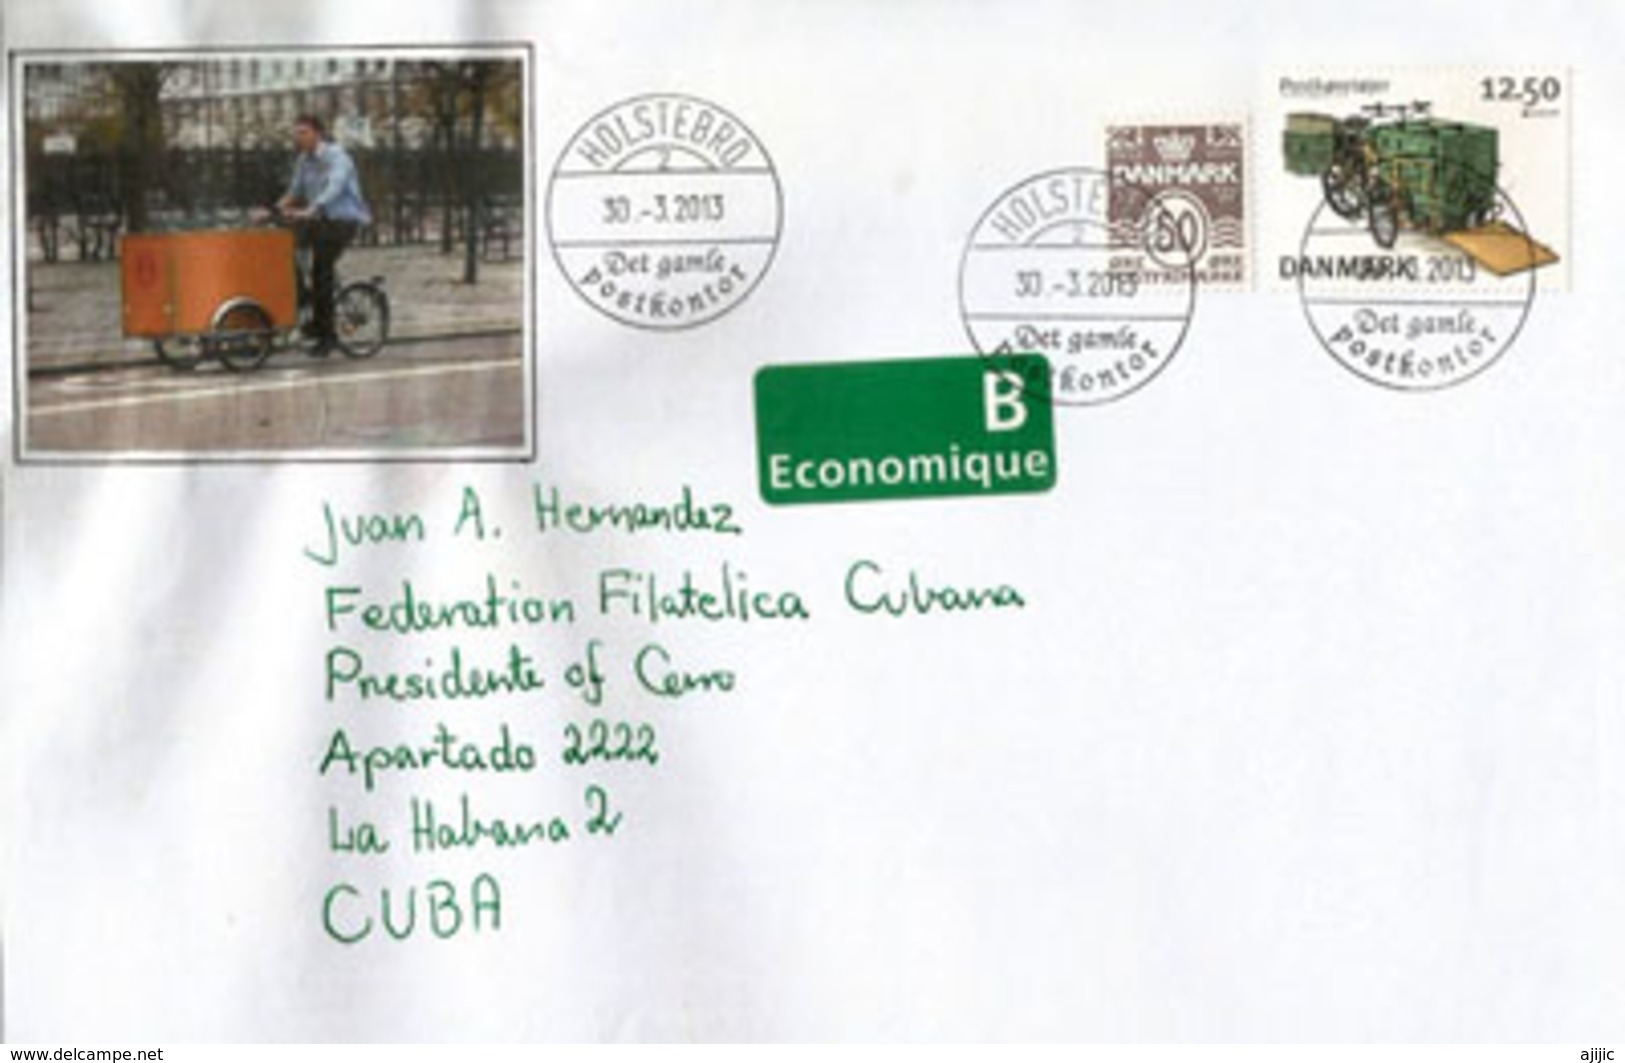 Triporteur De La Poste Danoise, Lettre Du Danemark Adressée à CUBA - Lettres & Documents